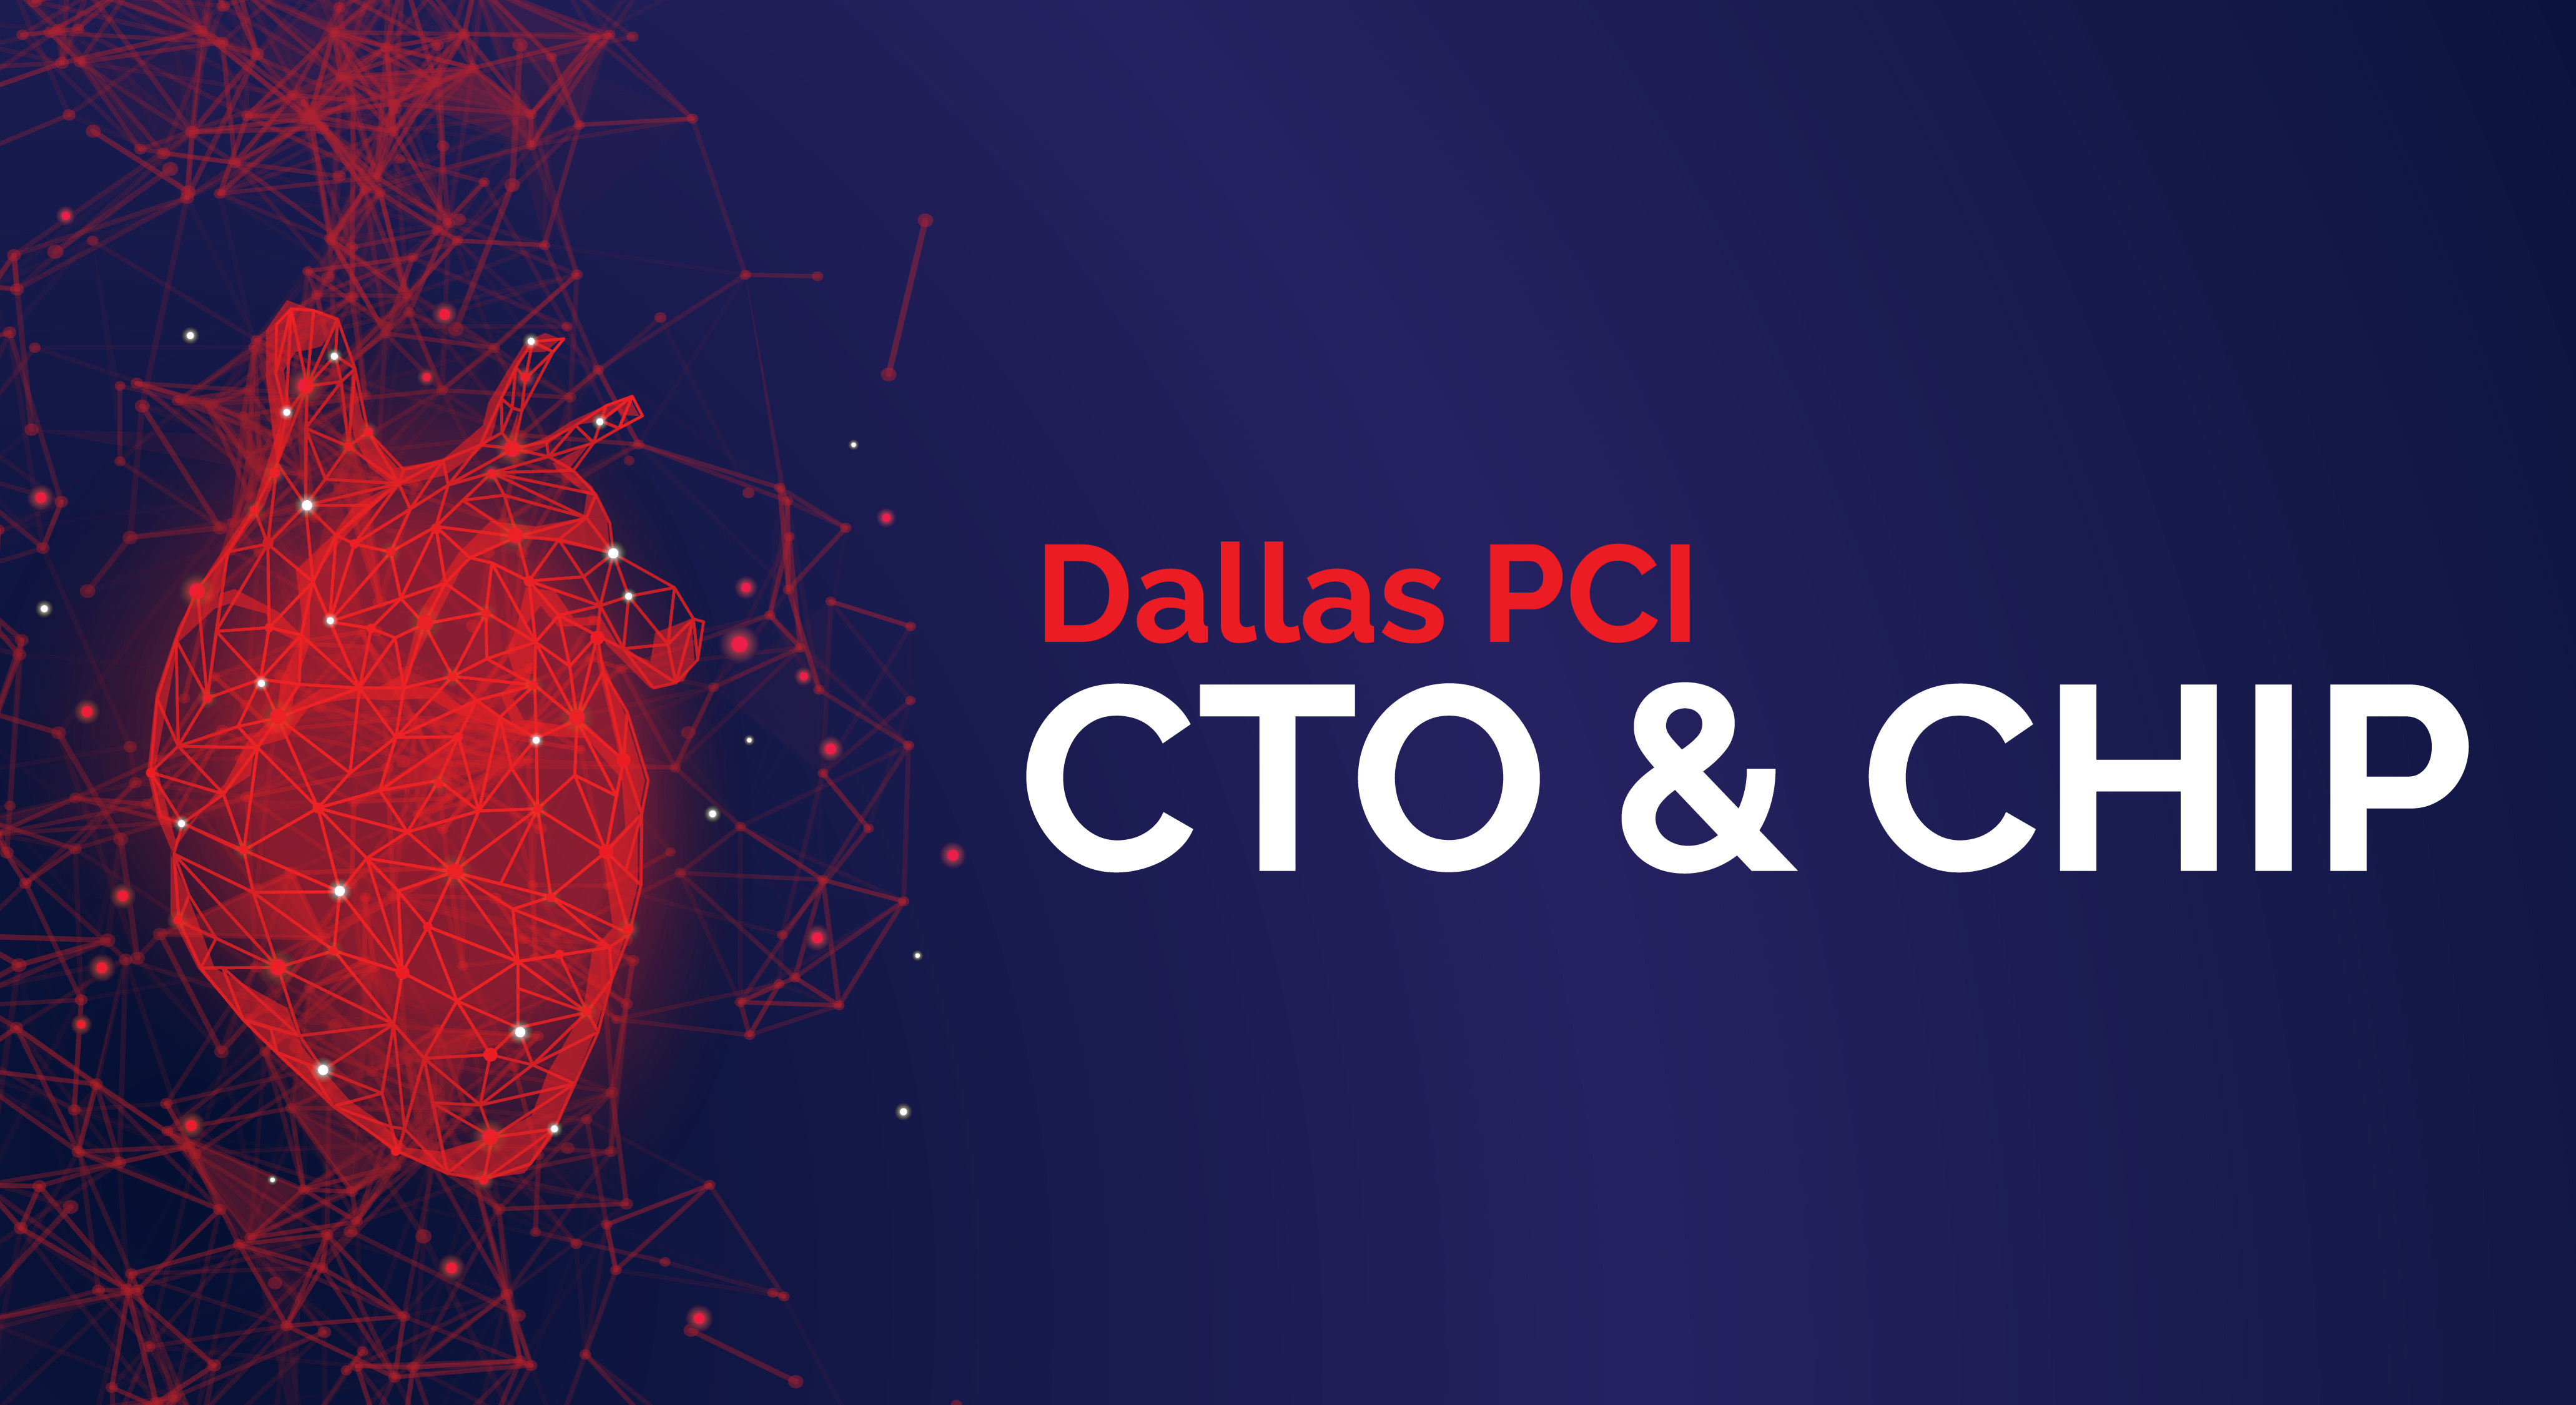 Dallas PCI: CTO & CHIP